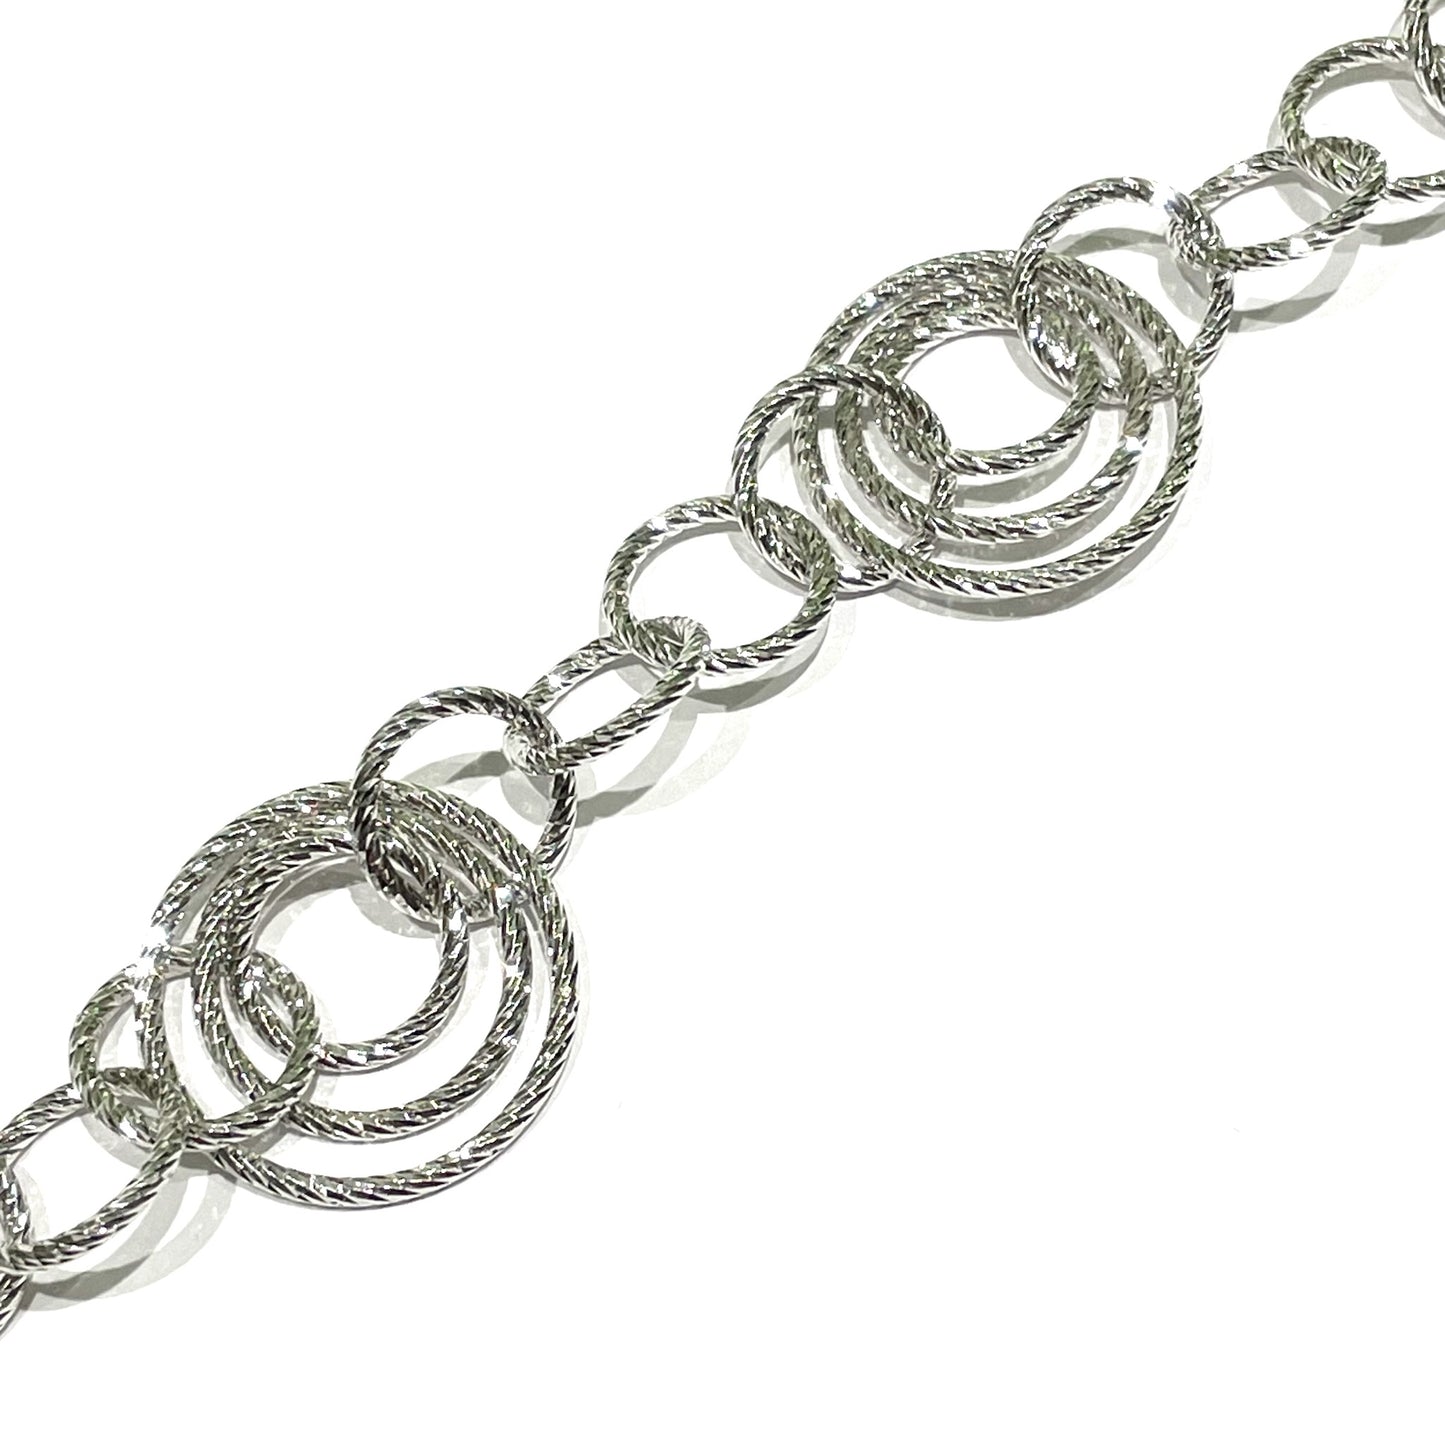 Bracciale in argento con anelli satinati.

Lunghezza 19 cm regolabile fino a 21 cm.

Dimensione anello più grande 2 cm.

Dimensione anello più piccolo 1 cm.